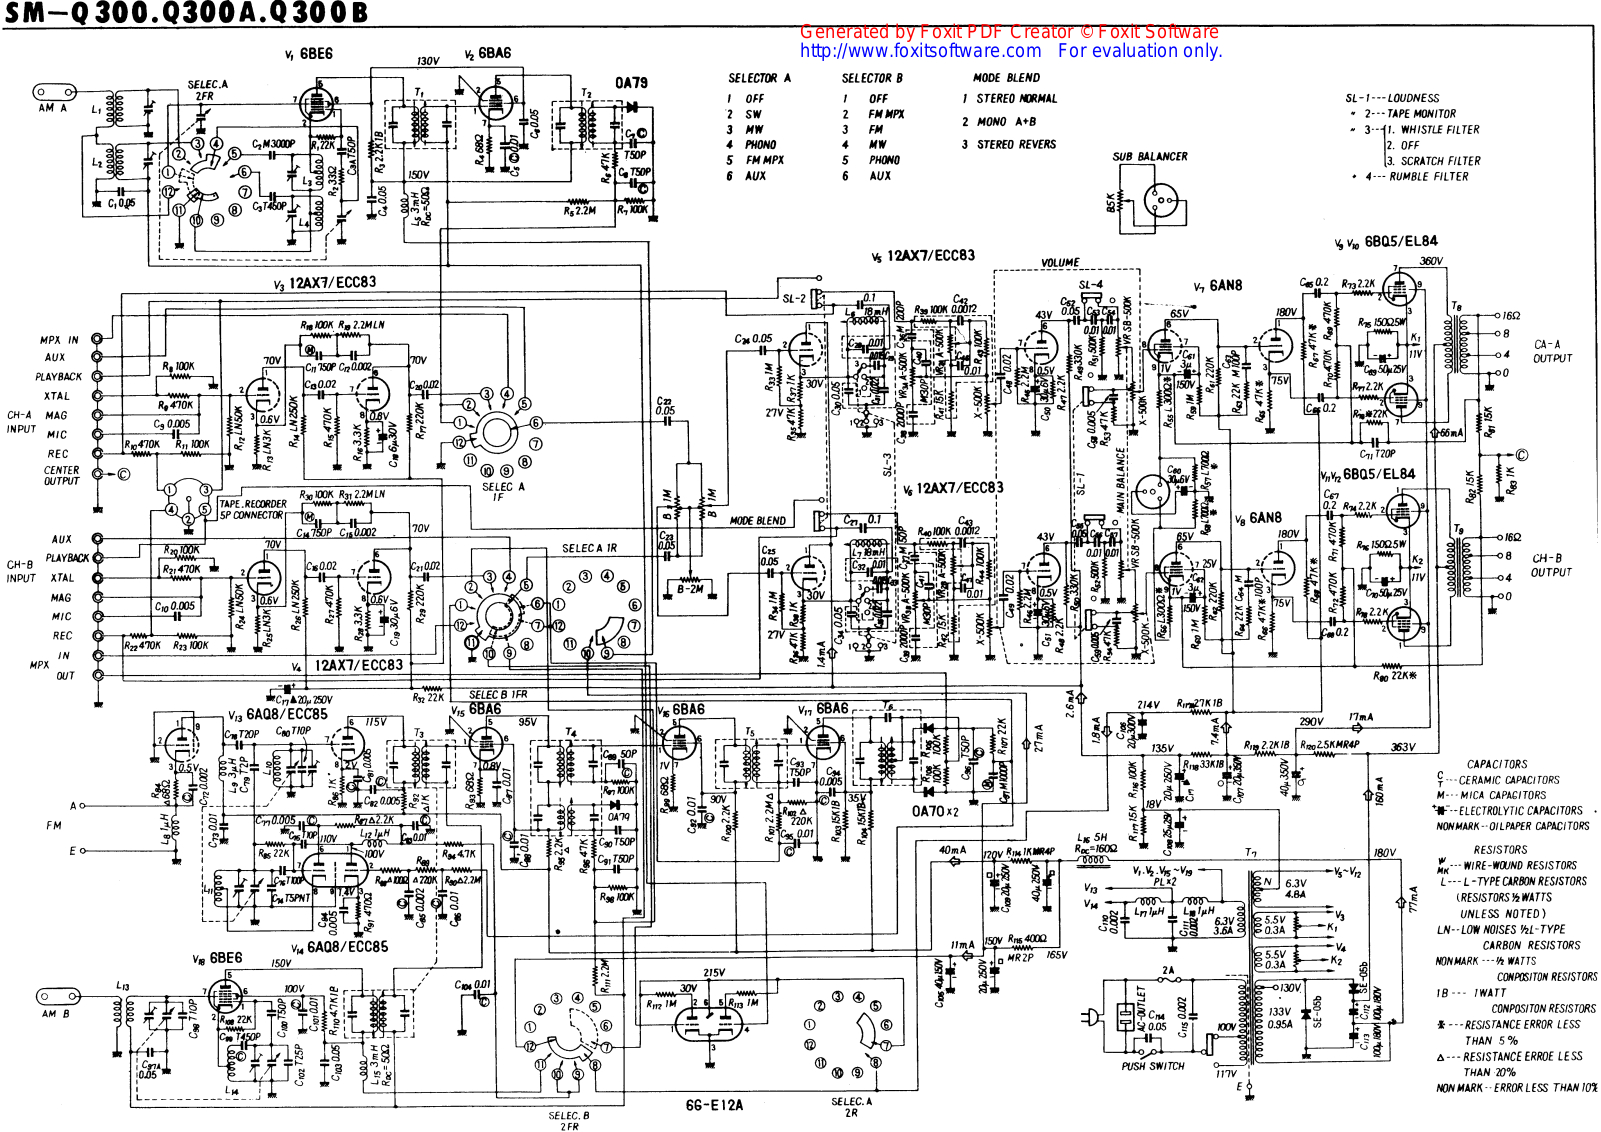 Pioneer SM-Q300, SM-Q300A, SM-Q300B schematic